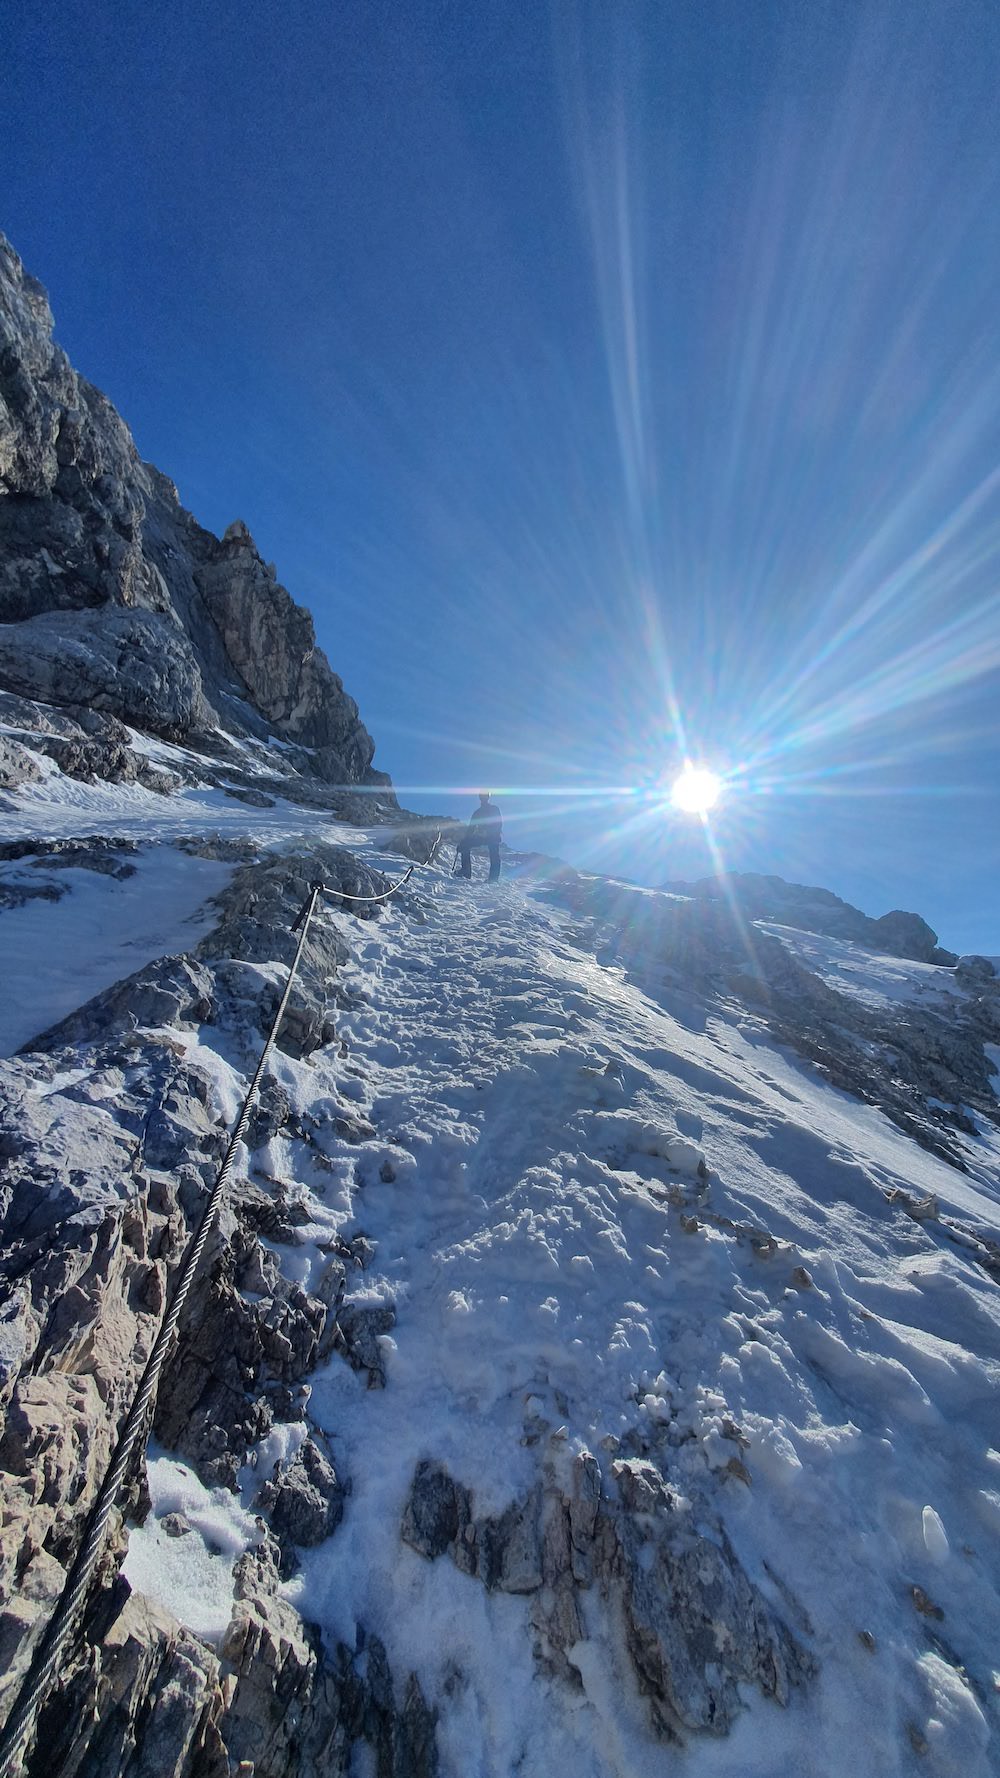 Klettersteig Alpspitze